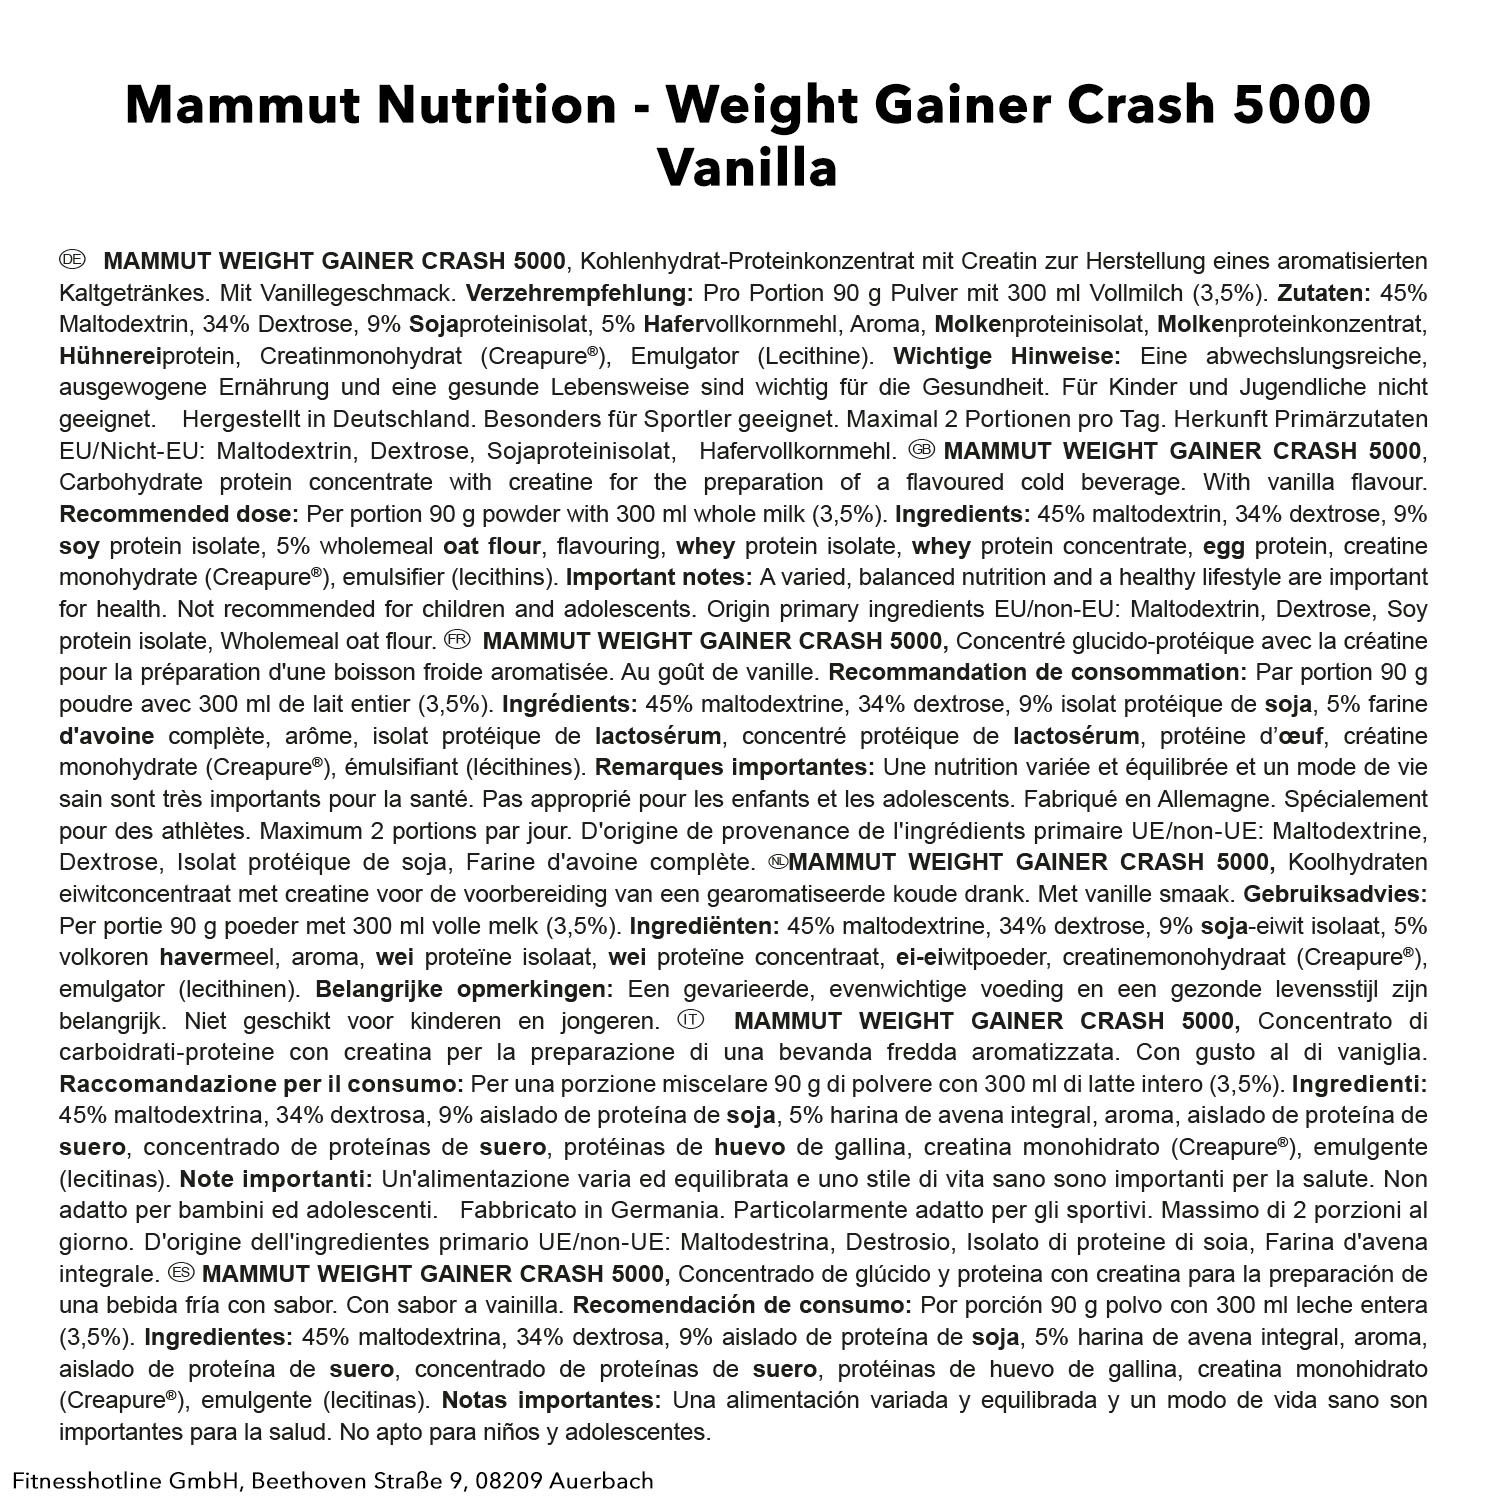 Mammut Weight Gainer Crash 5000, Vanille